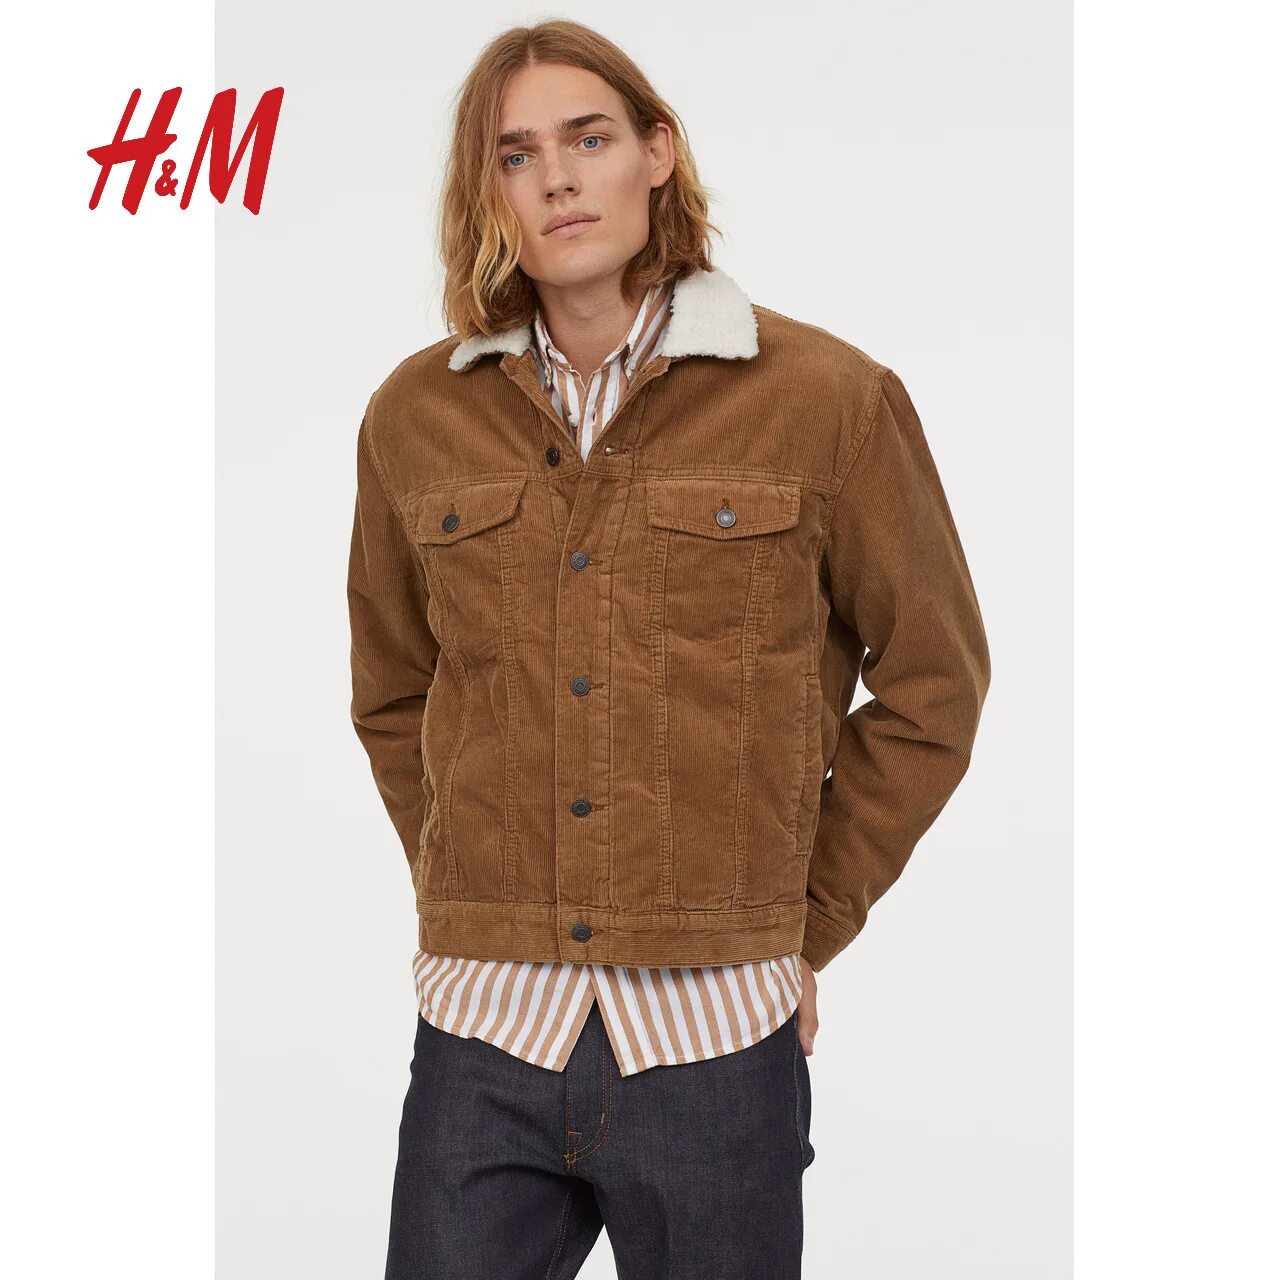 Куртка h m мужская. Вельветовая куртка HM мужская. Вельветовая куртка Tom Tailor. Куртка h&m коричневая мужская вельвет. Redskins вельветовая куртка мужская.